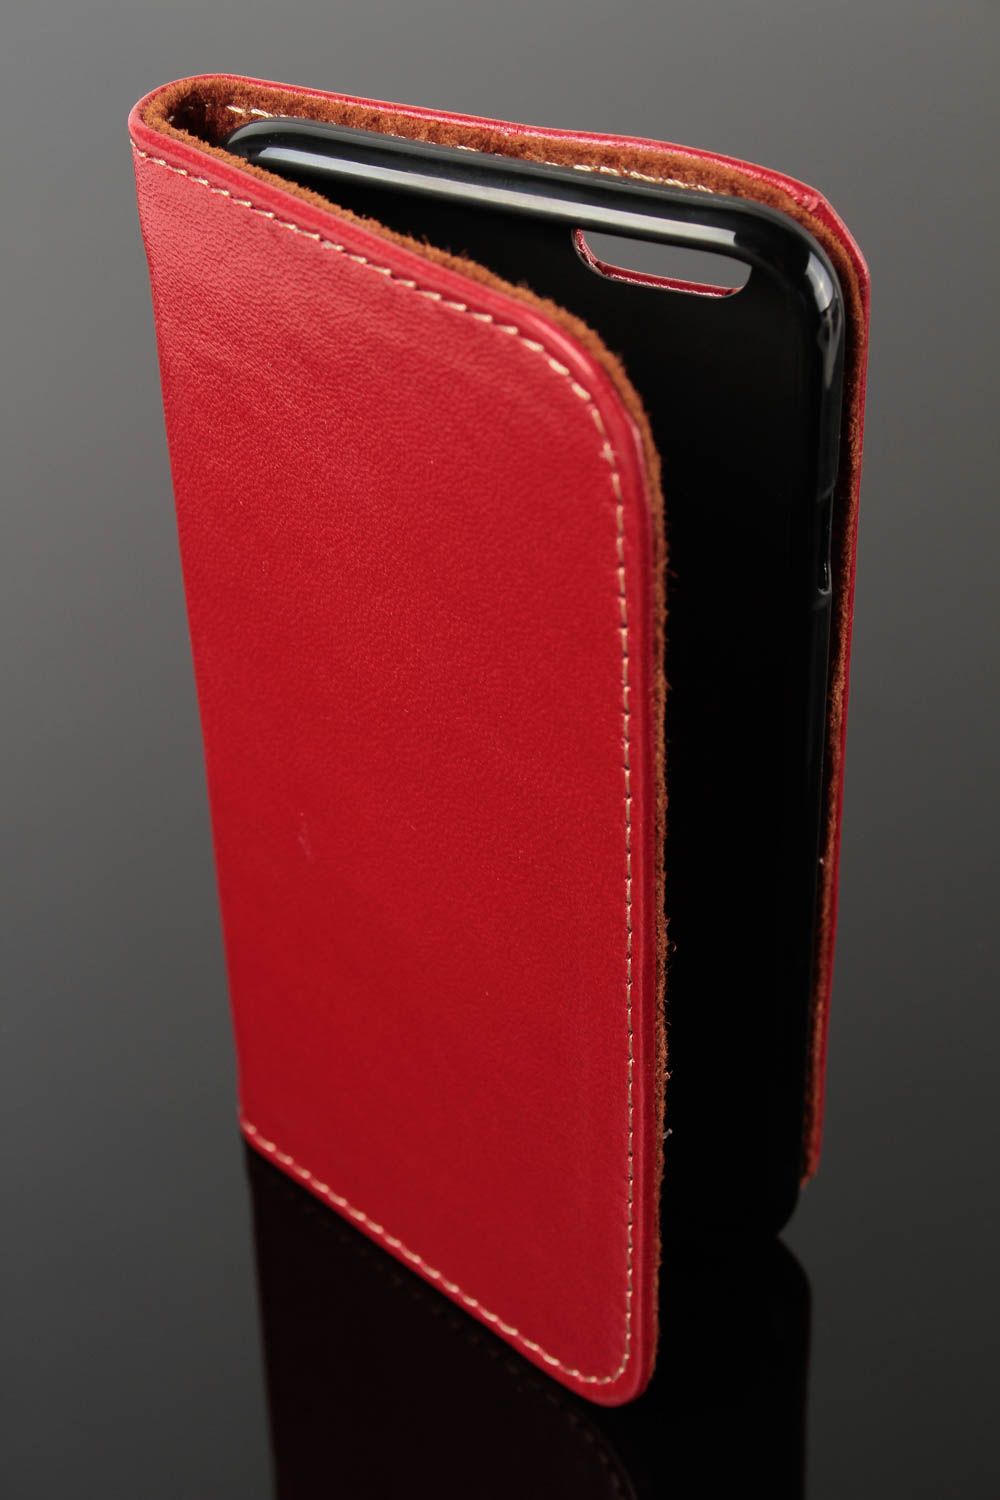 Чехол на телефон хэнд мэйд аксессуар для смартфона кожаный чехол стильный фото 2